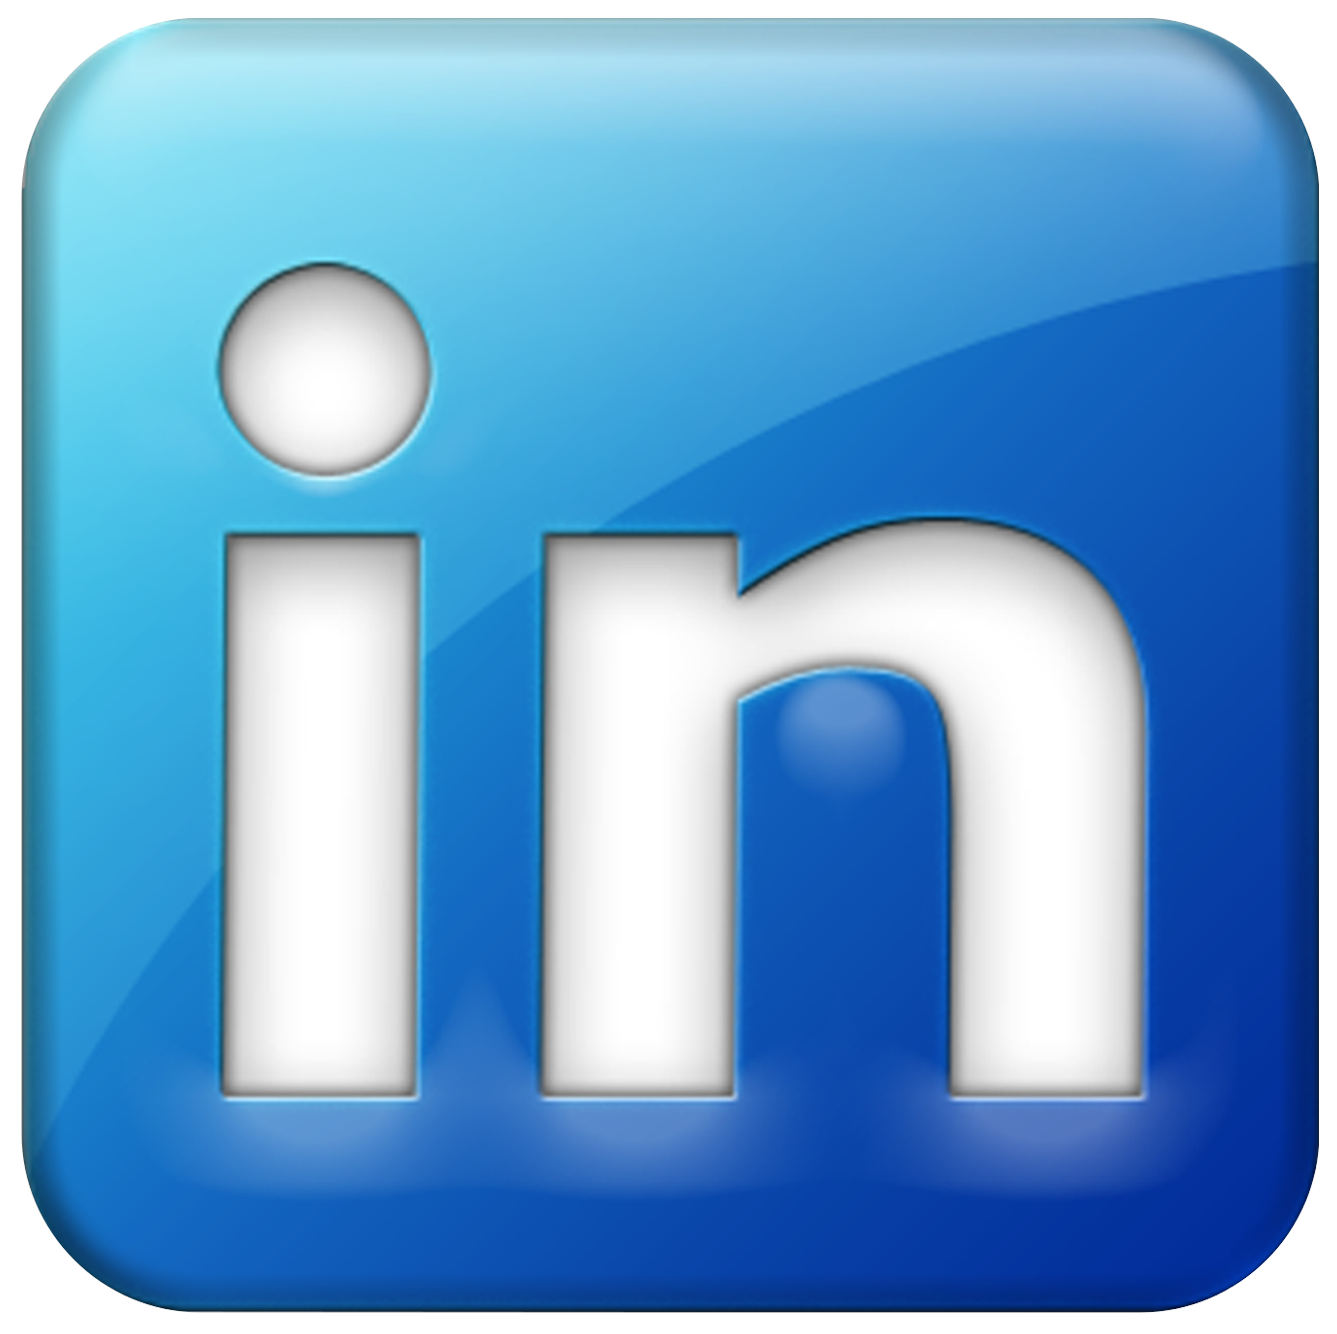 transparent-Linkedin-logo-icon.png - 757.02 kB